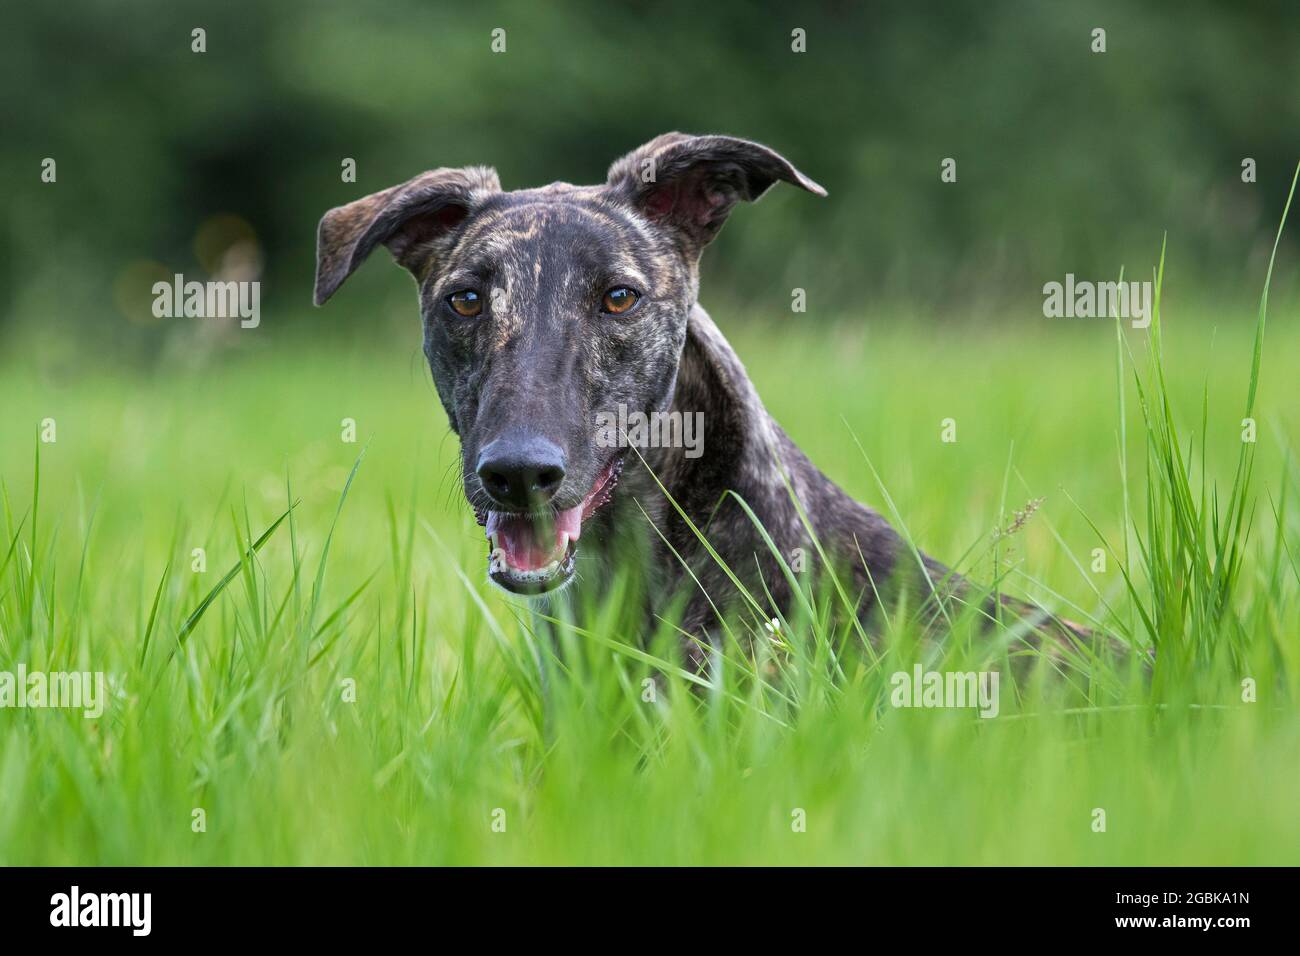 Galgo Español à revêtement brut brindiqué / galgo espagnol barcino / atigrado Spatithound espagnol, chien race des soupirs, gros plan portrait Banque D'Images